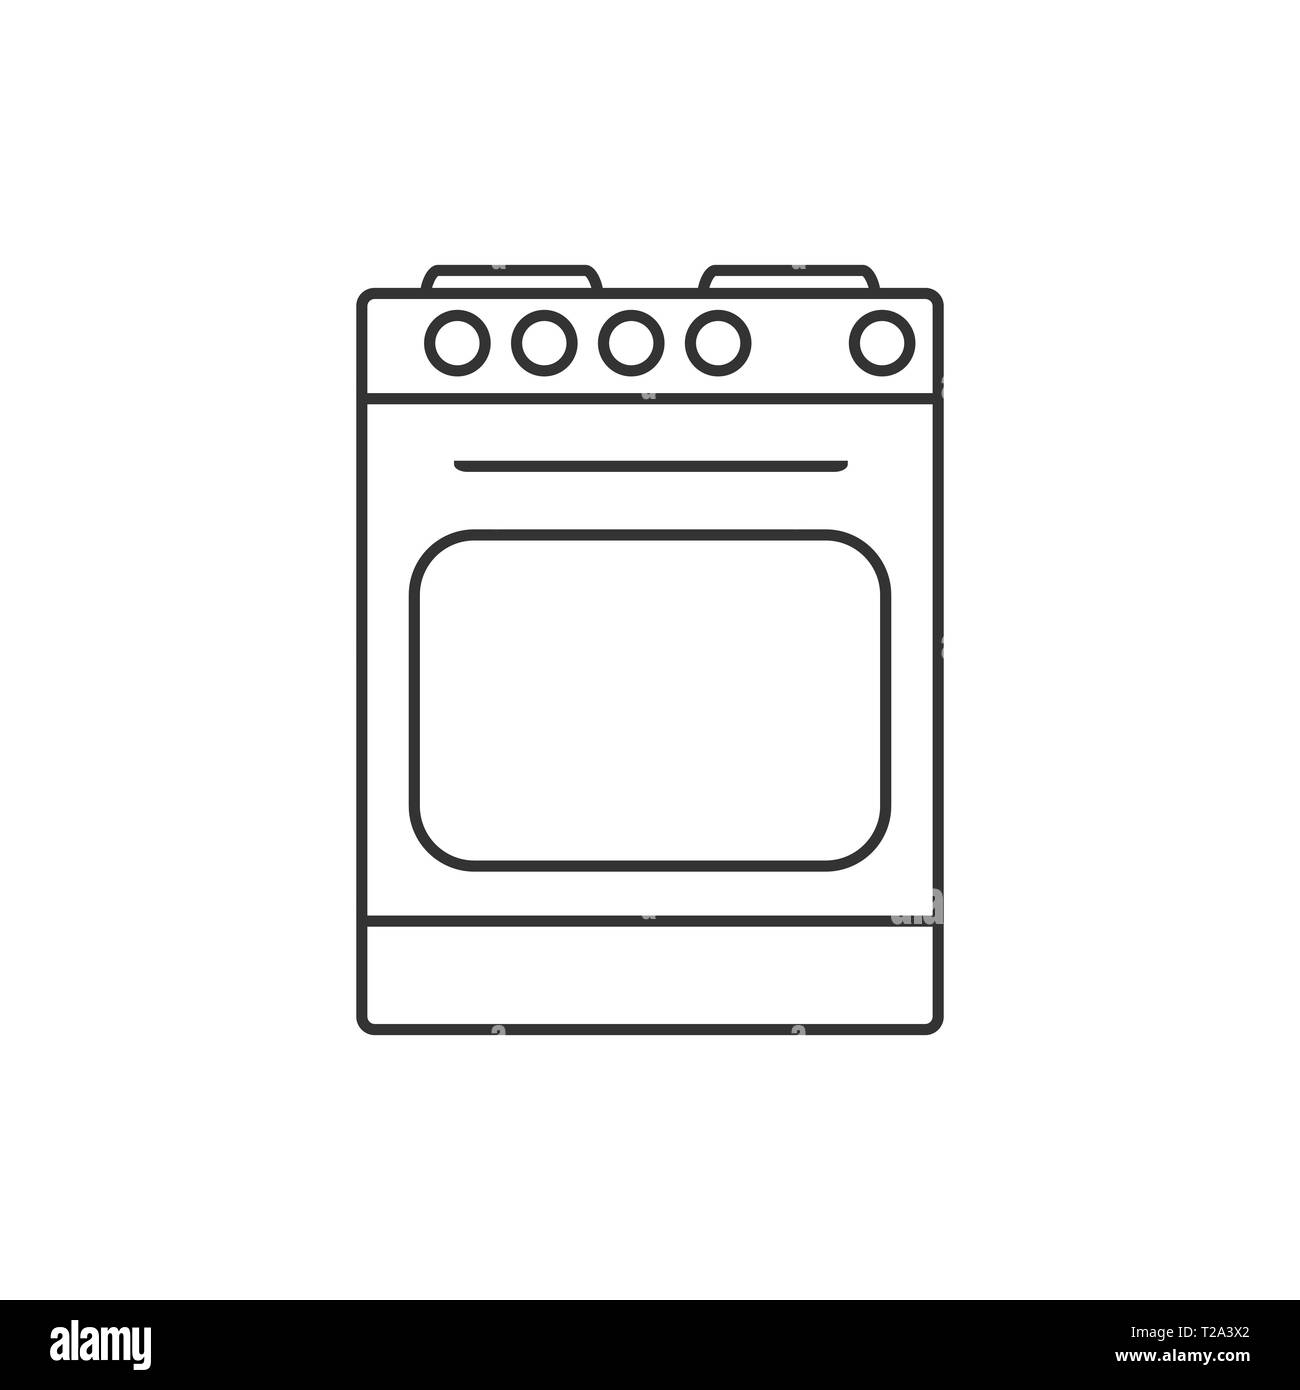 Бесплатные иконки про кухонные плиты